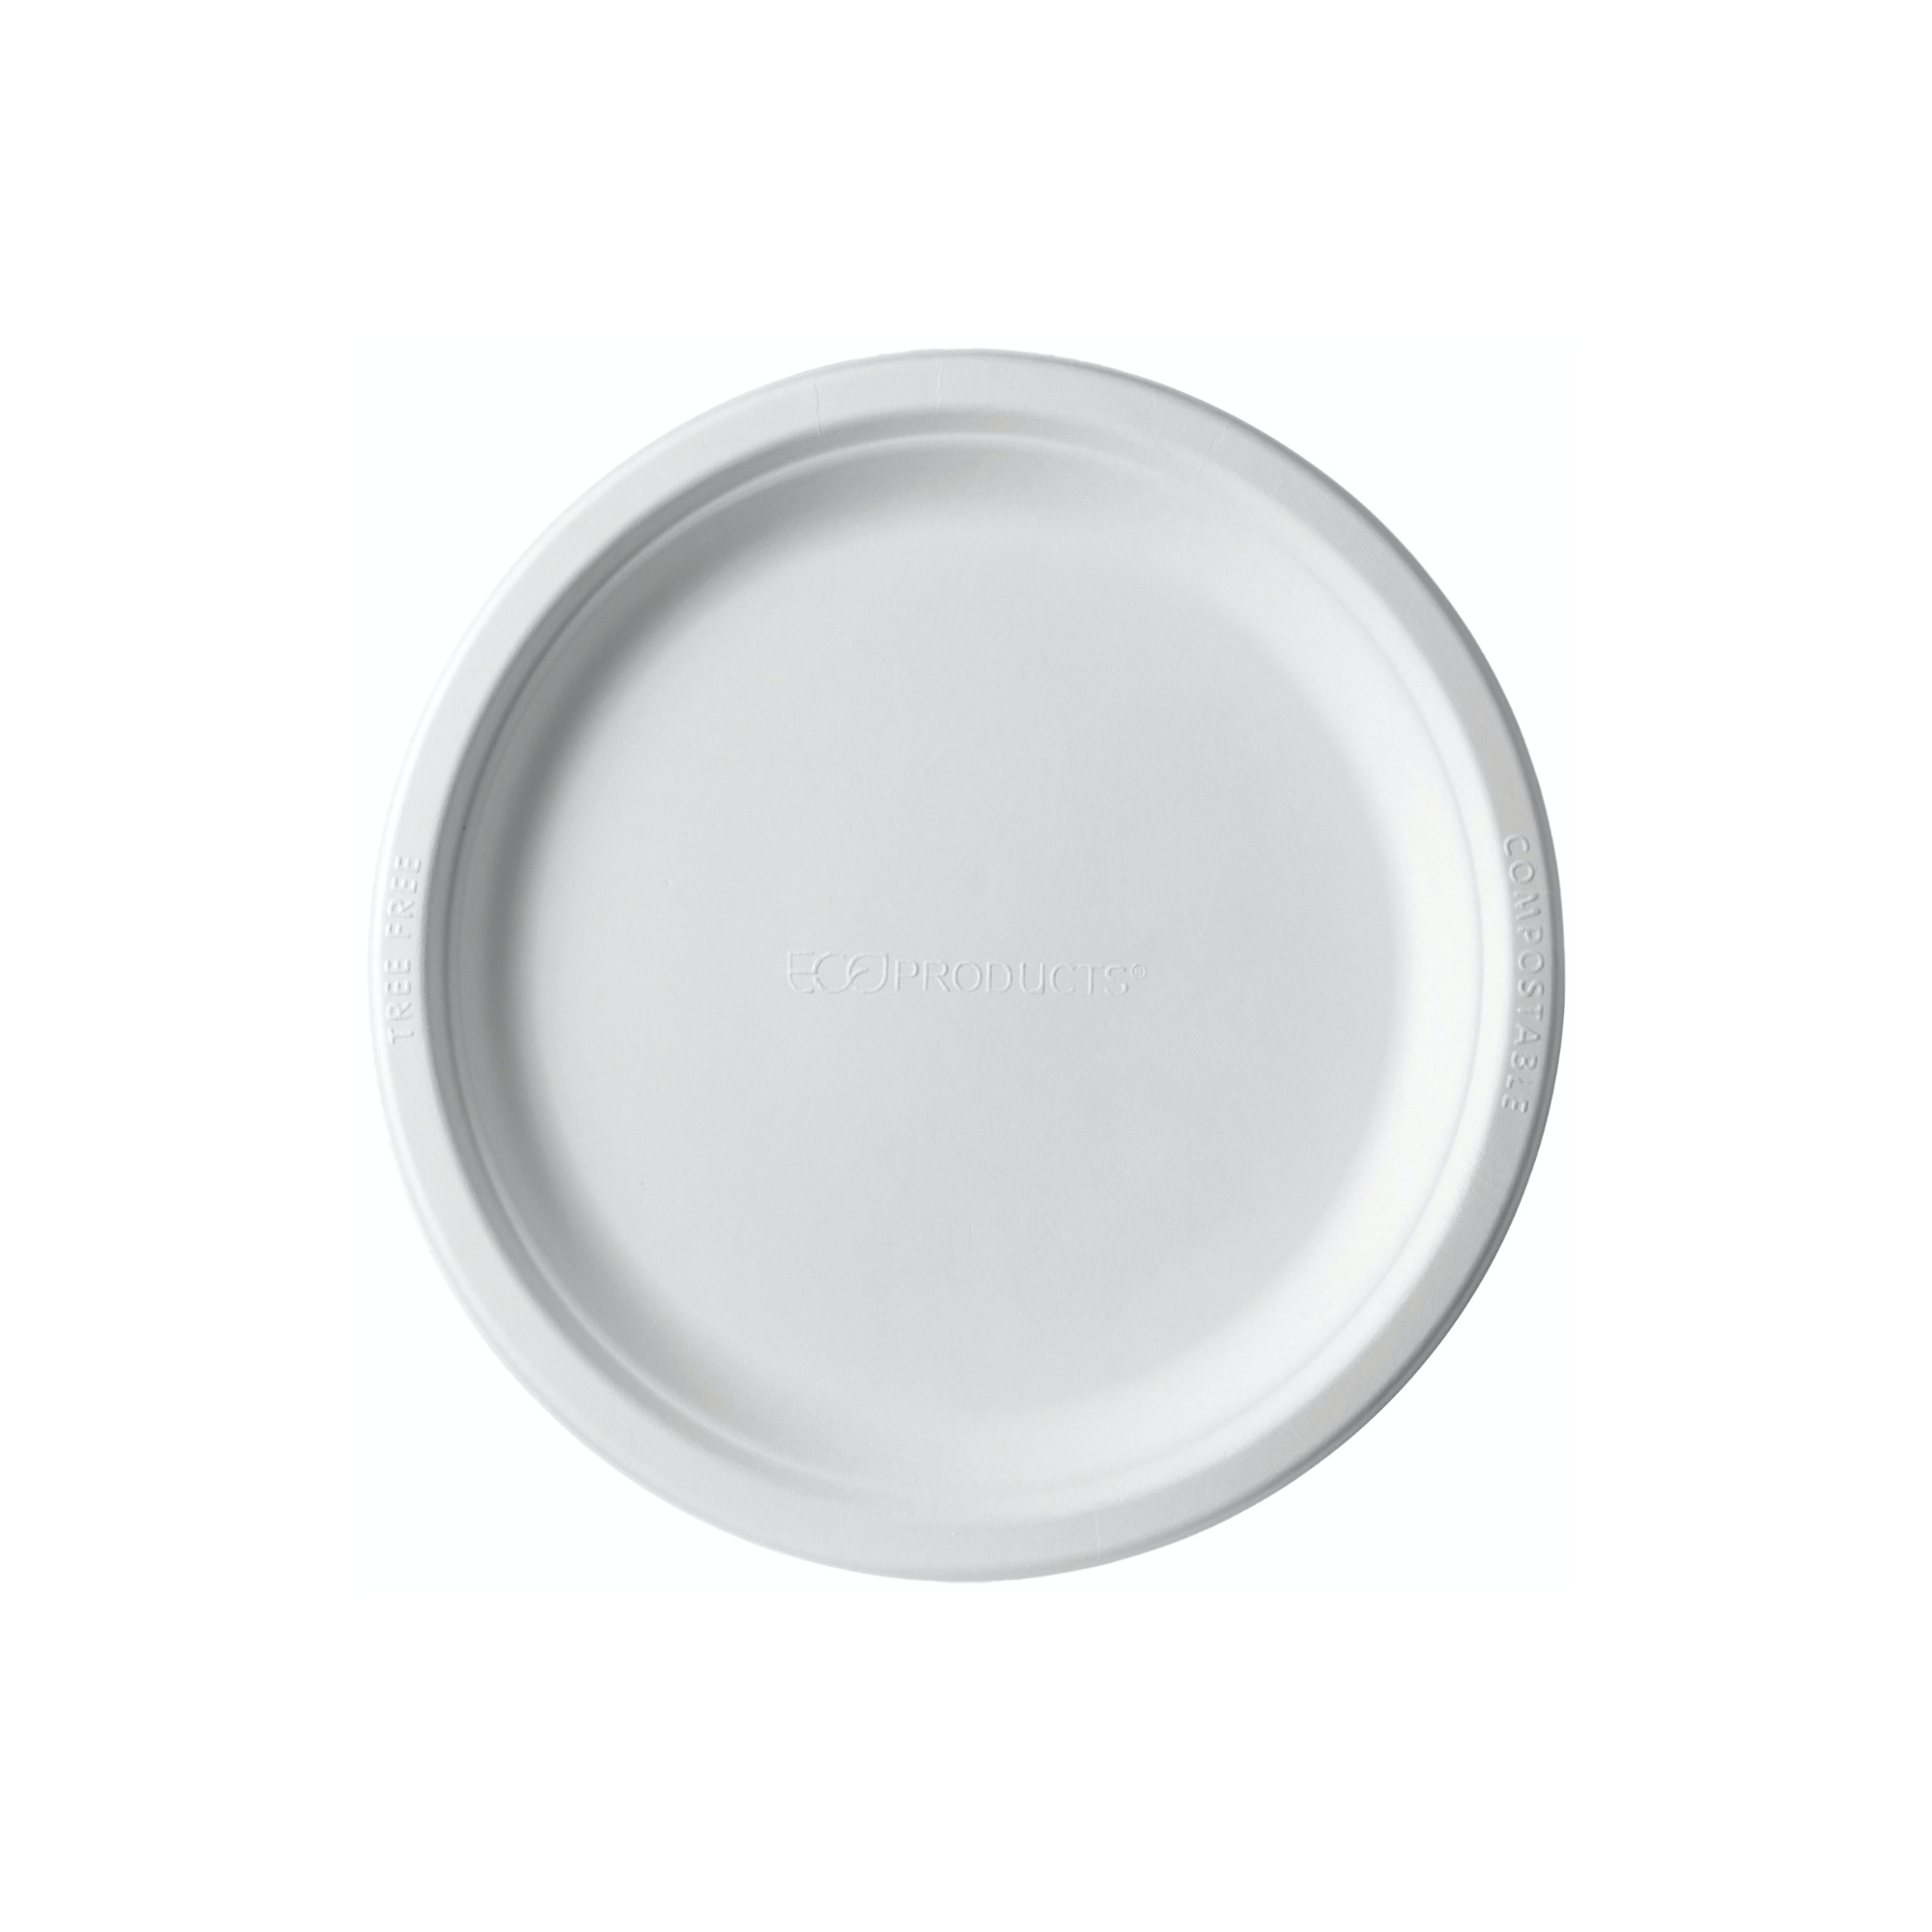 Lapos tányér - Cukornád lapos tányér 154 mm - 50db - Greenstic